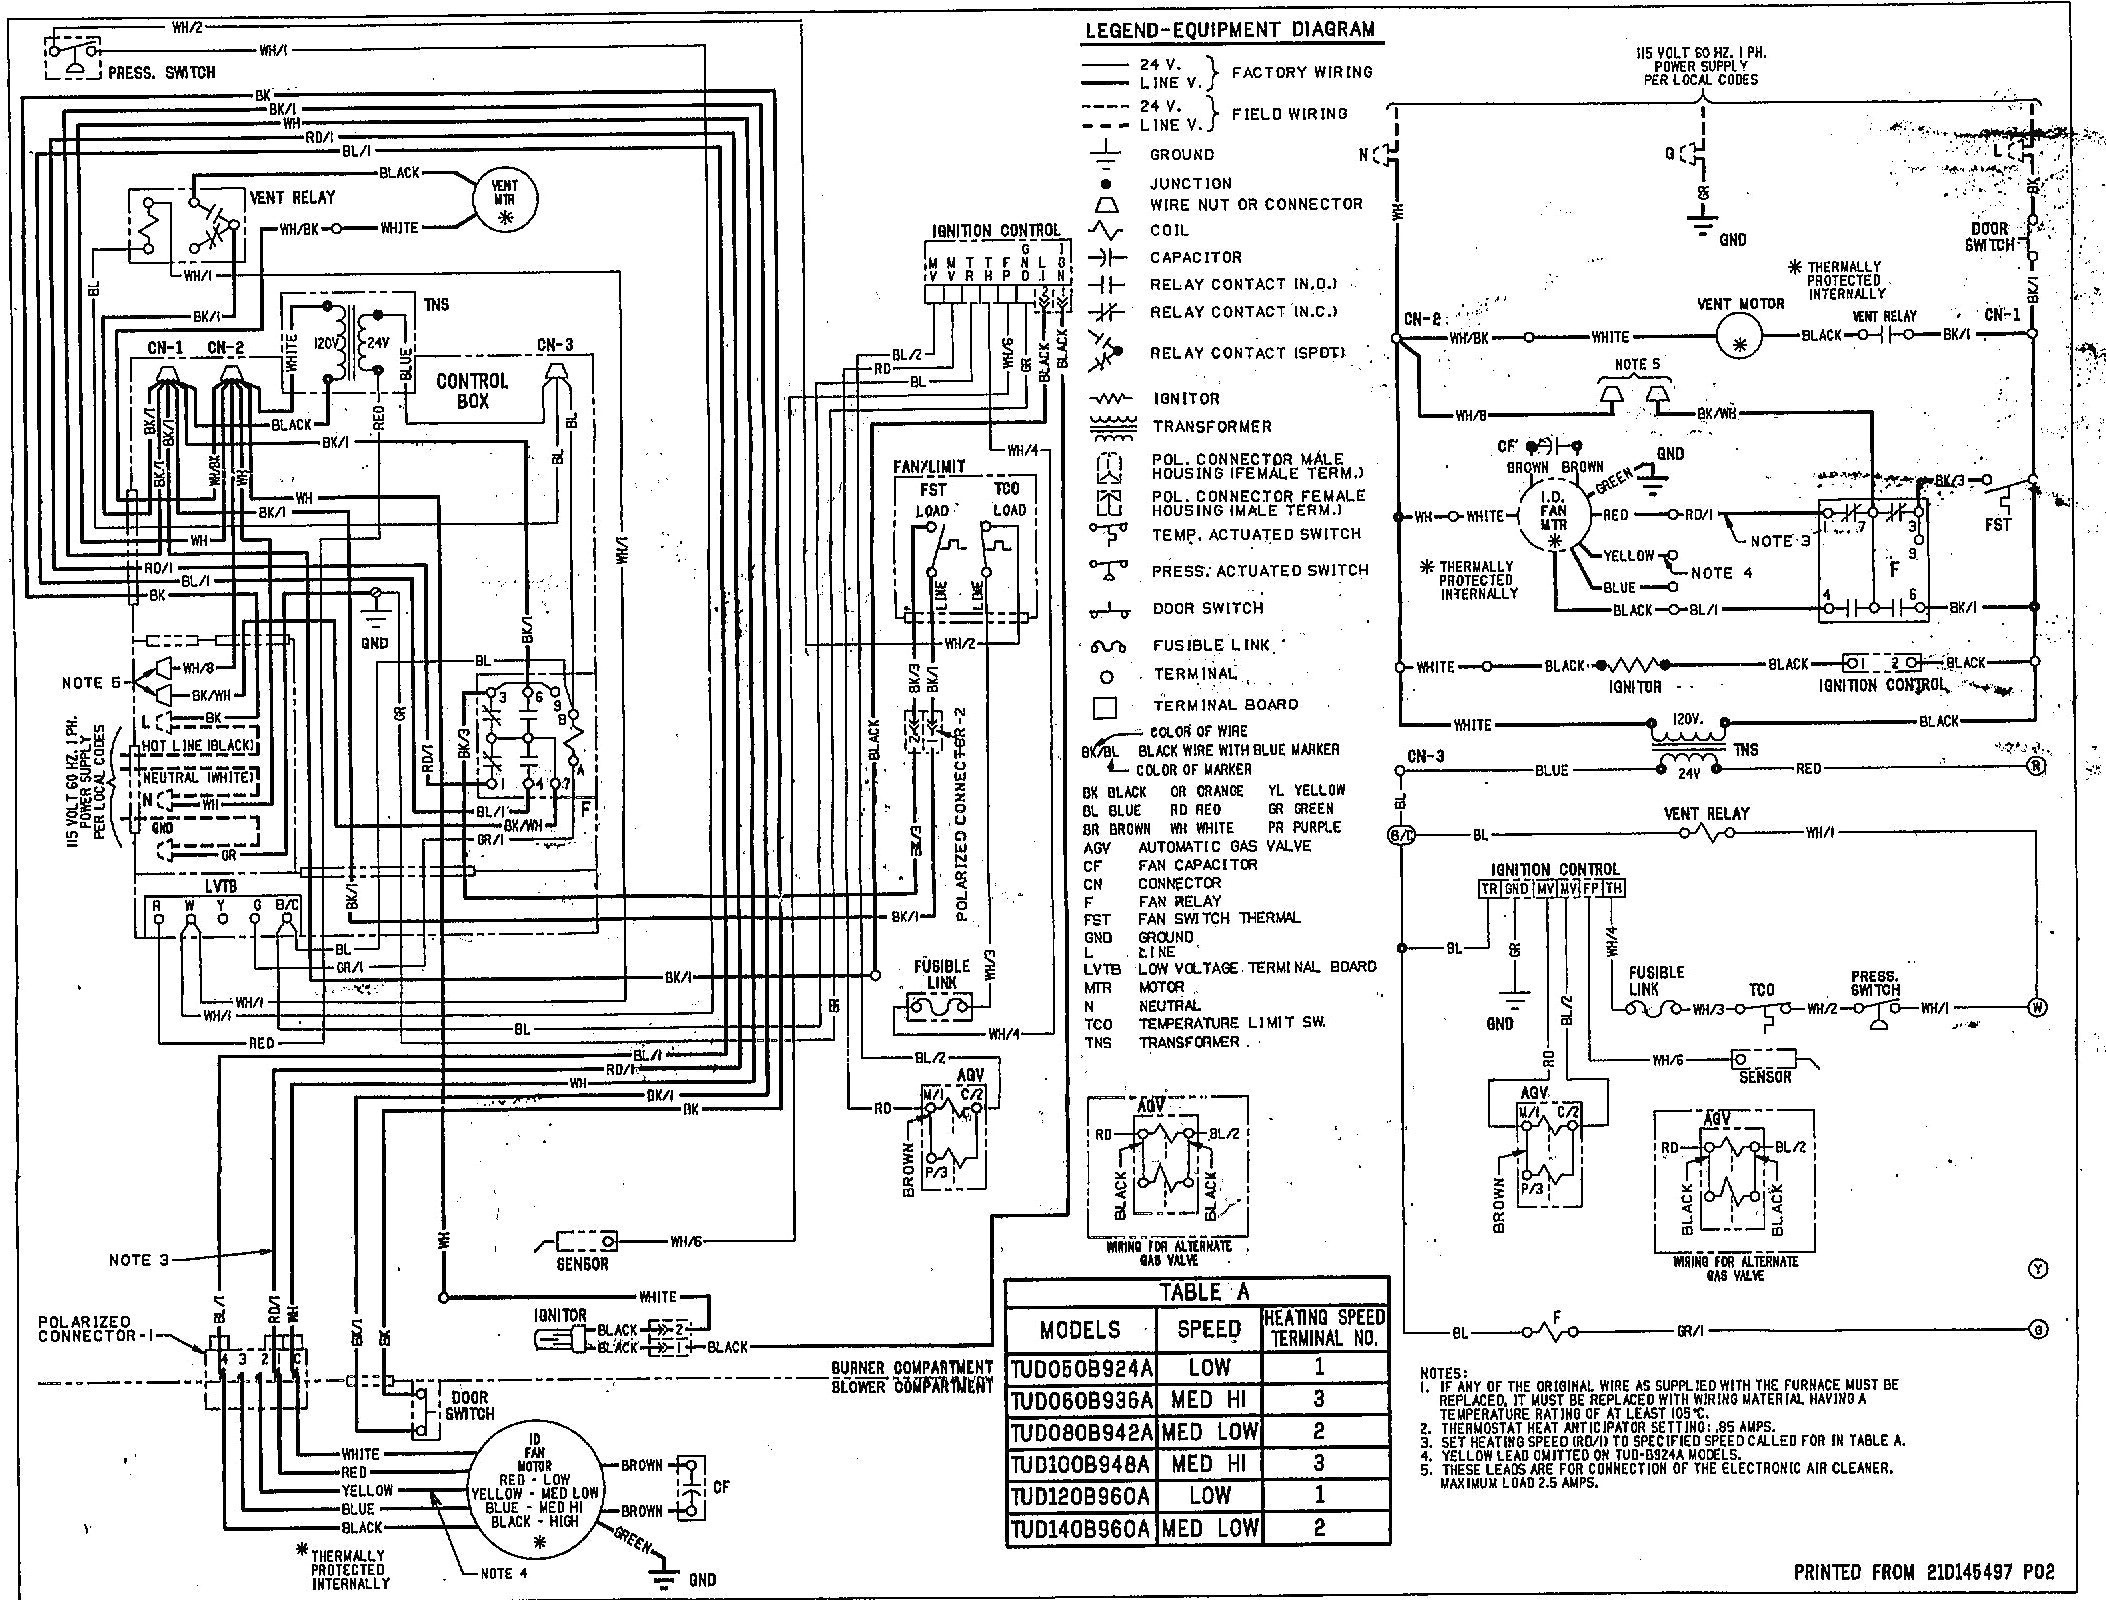 Goodman Hkr 10 Wiring Diagram Collection - Wiring Diagram Sample